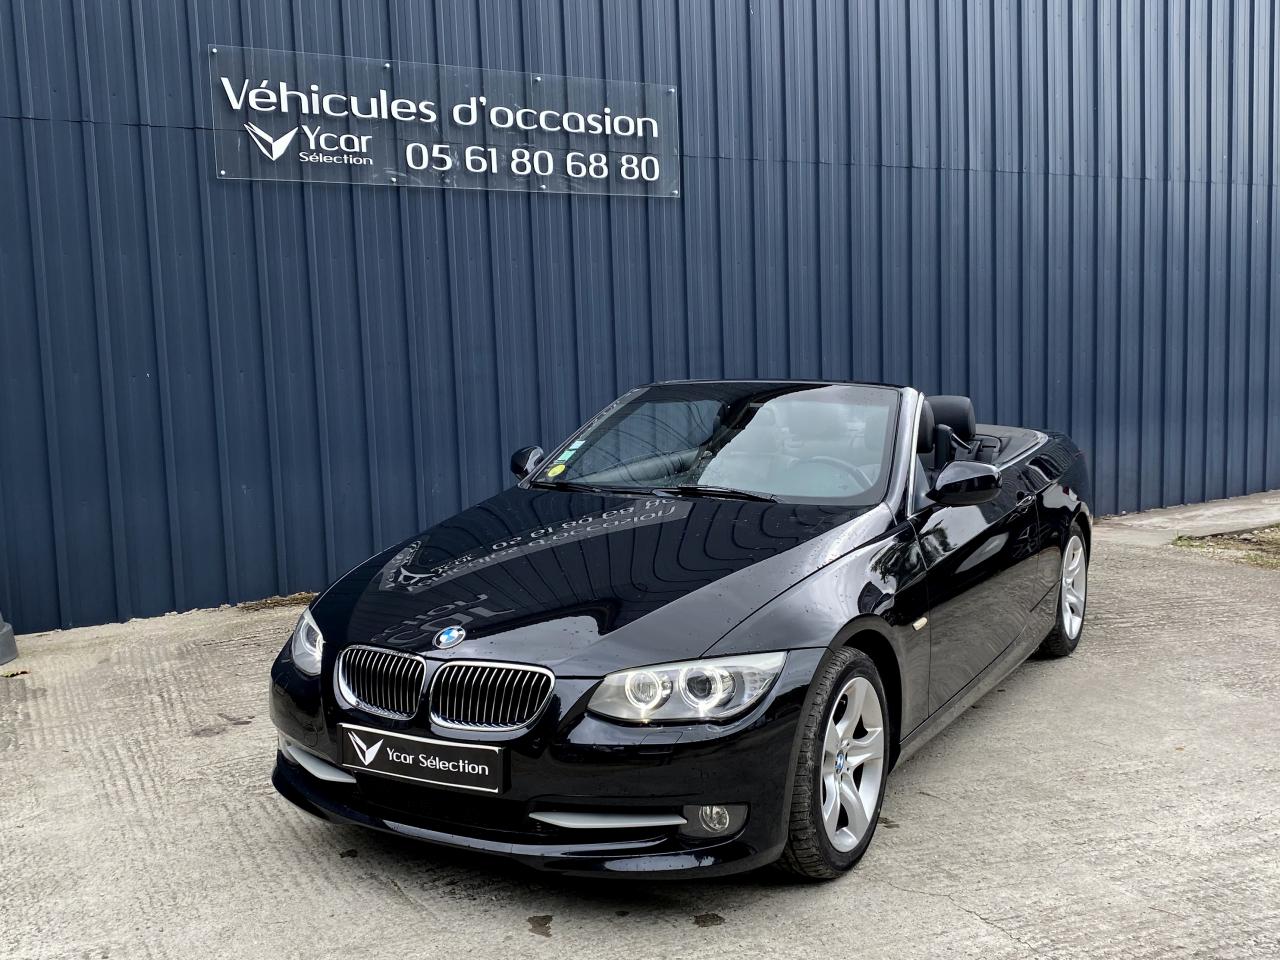 YCAR SELECTION - BMW-SERIE 3-CABRIOLET 325d 3.0d 204 cv (E93) LUXE